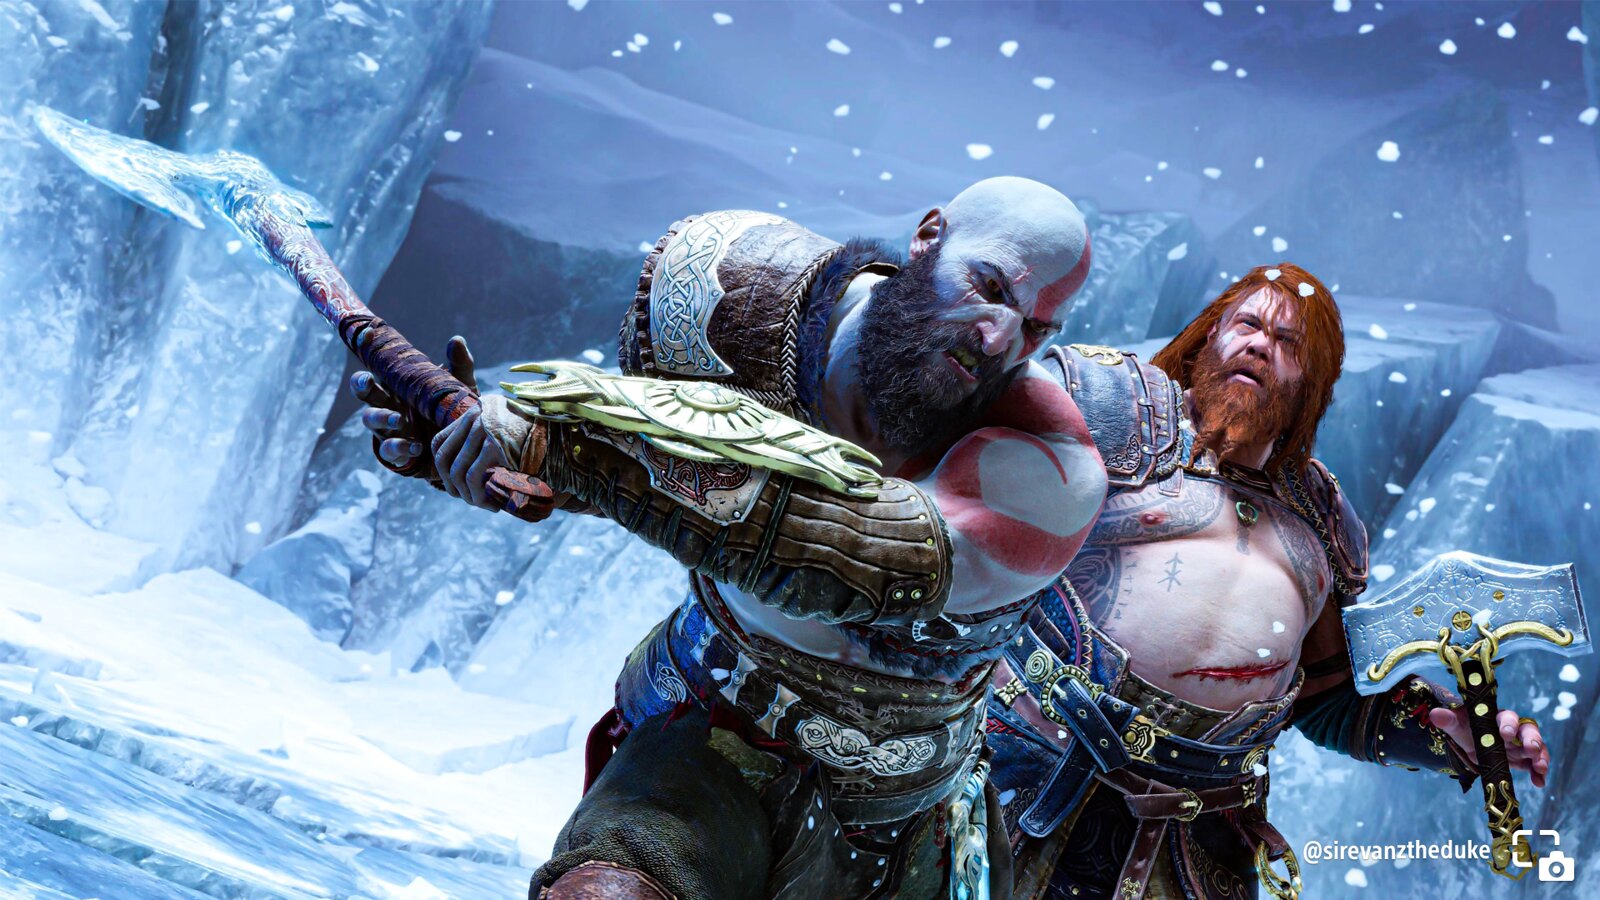 Kratos brutal, localizaciones fabulosas y planos llenos de color: el blog de PlayStation publicó las mejores fotos tomadas por los jugadores en God of War Ragnarok-4